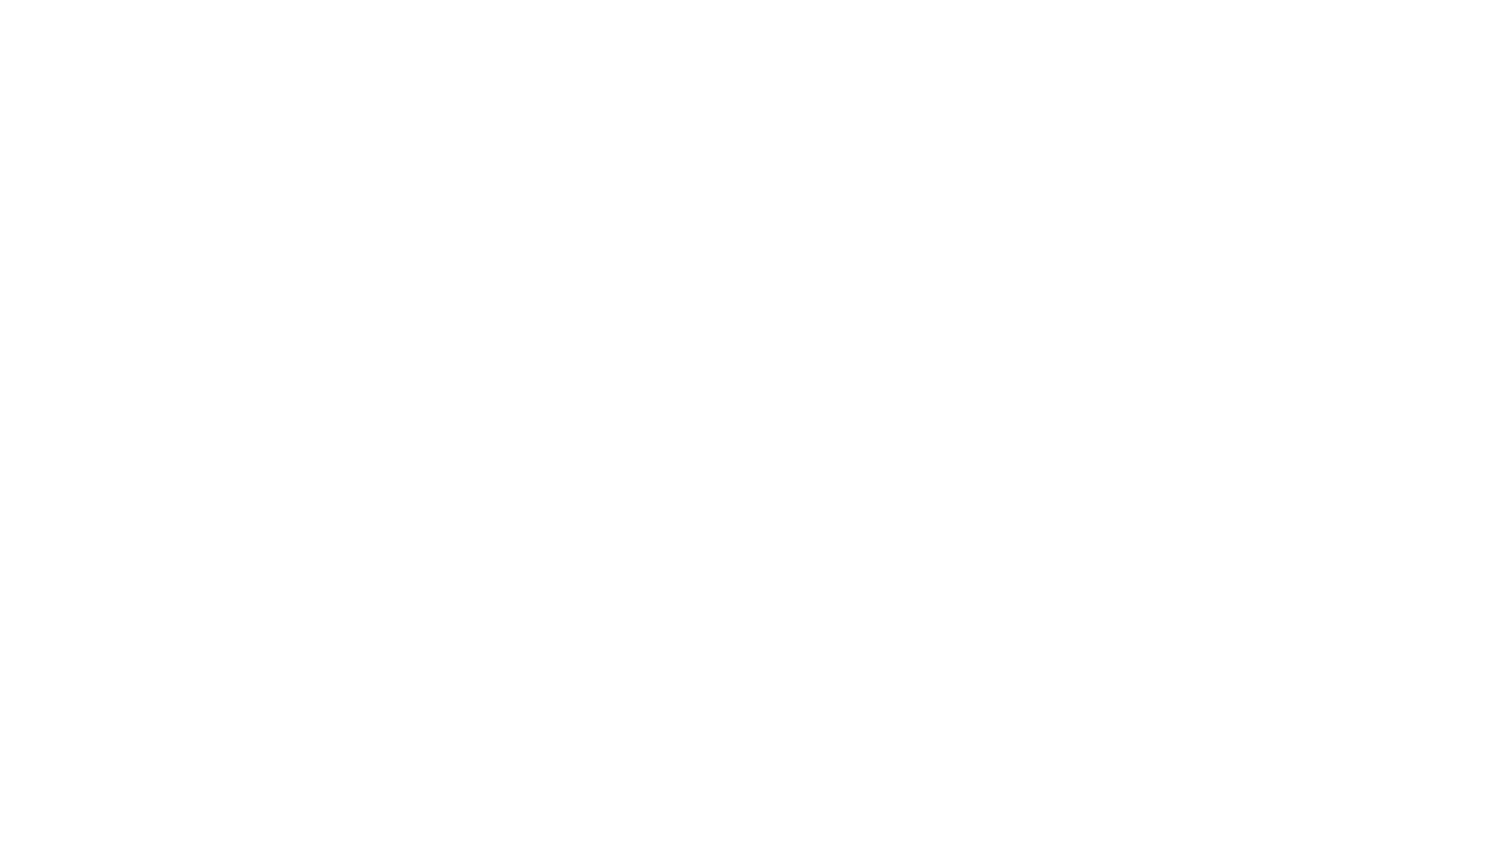 DMD Home Inspector